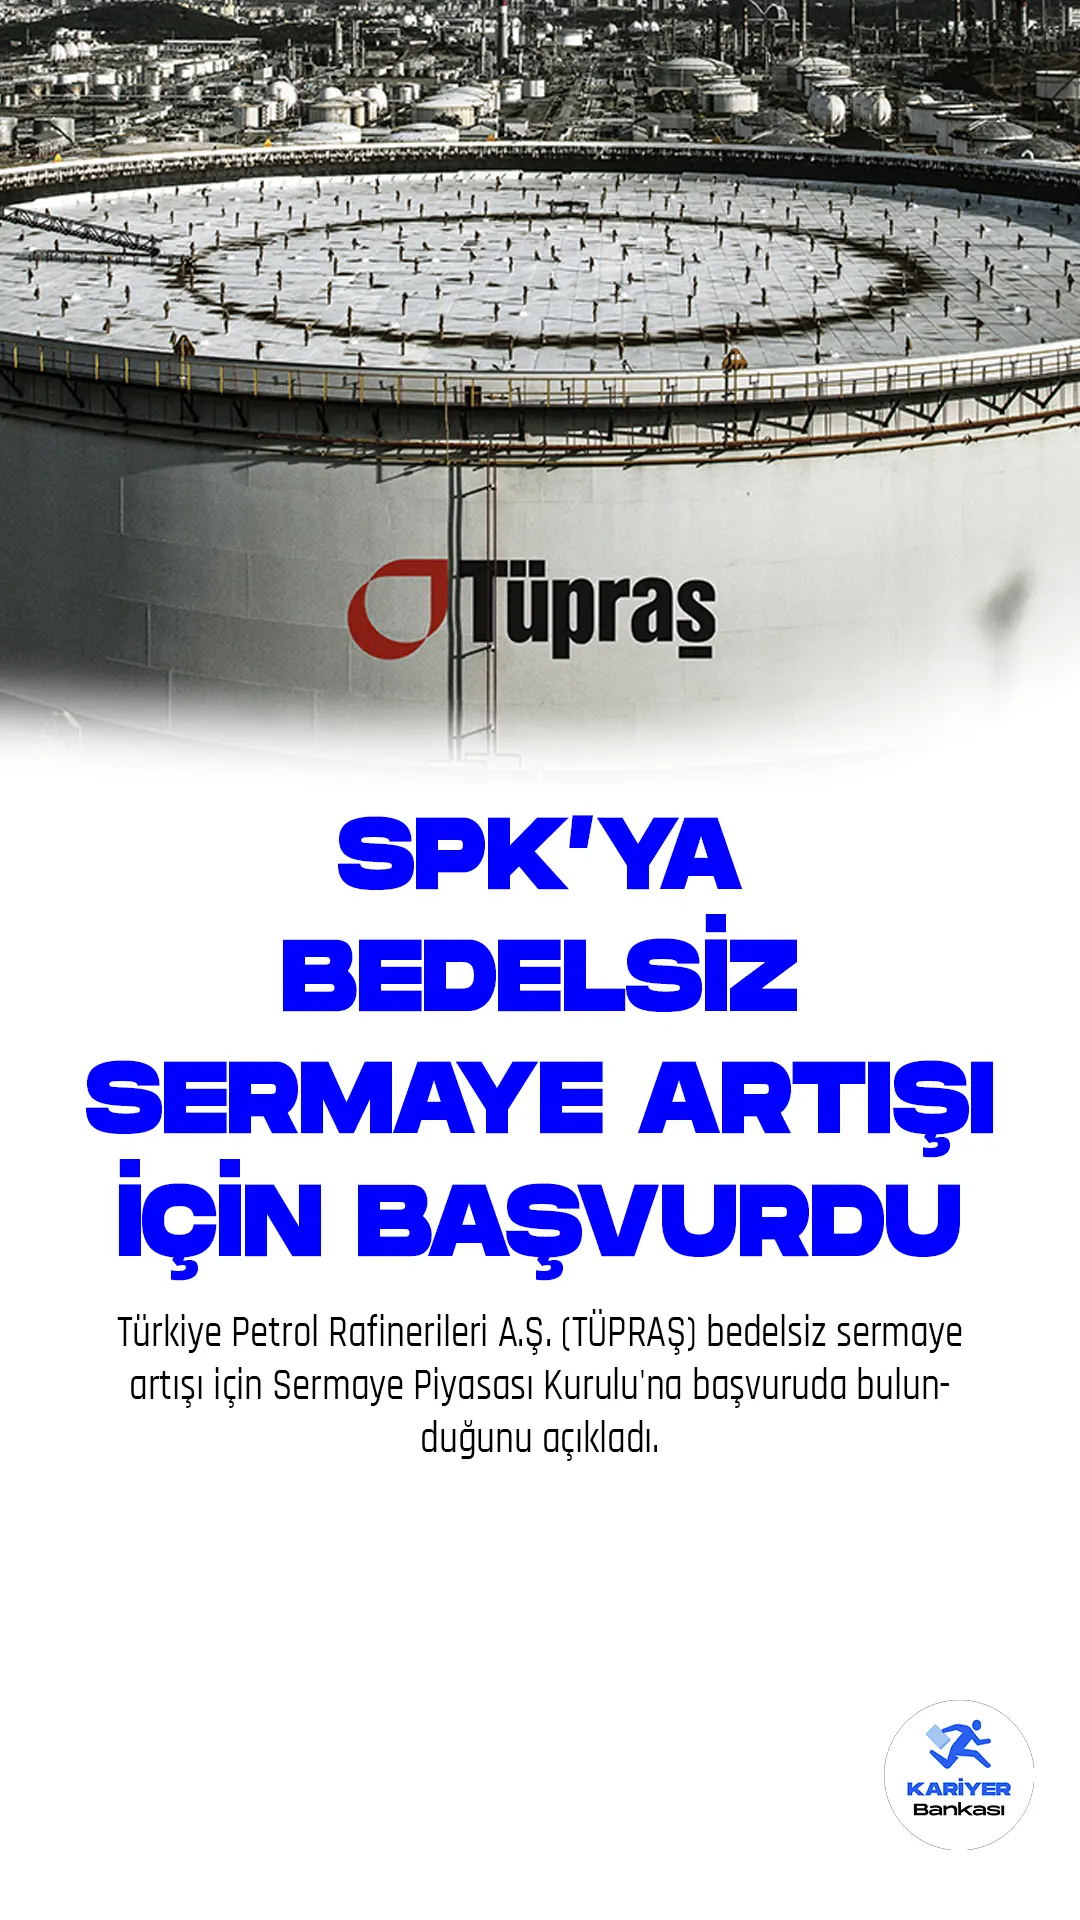 Türkiye Petrol Rafinerileri A.Ş. (TÜPRAŞ) bedelsiz sermaye artışı için Sermaye Piyasası Kurulu'na başvuruda bulunduğunu açıkladı.